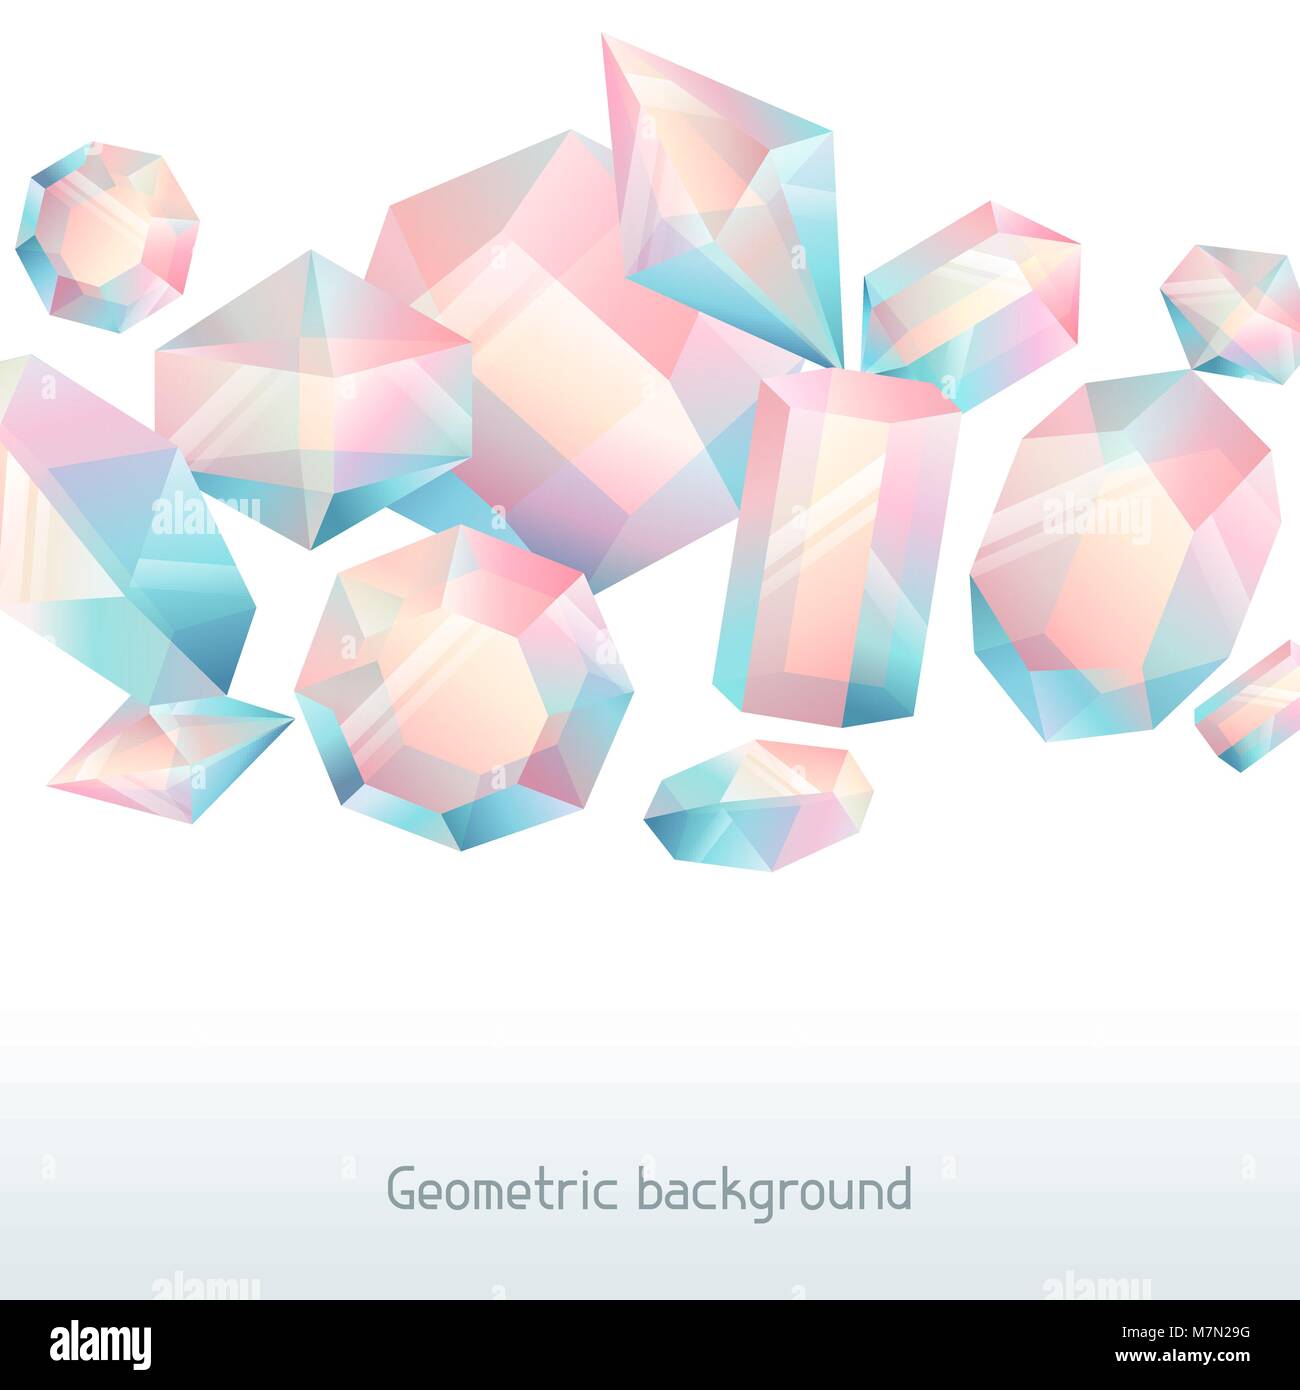 Zusammenfassung Hintergrund mit geometrischen Kristalle und Mineralien Stock Vektor